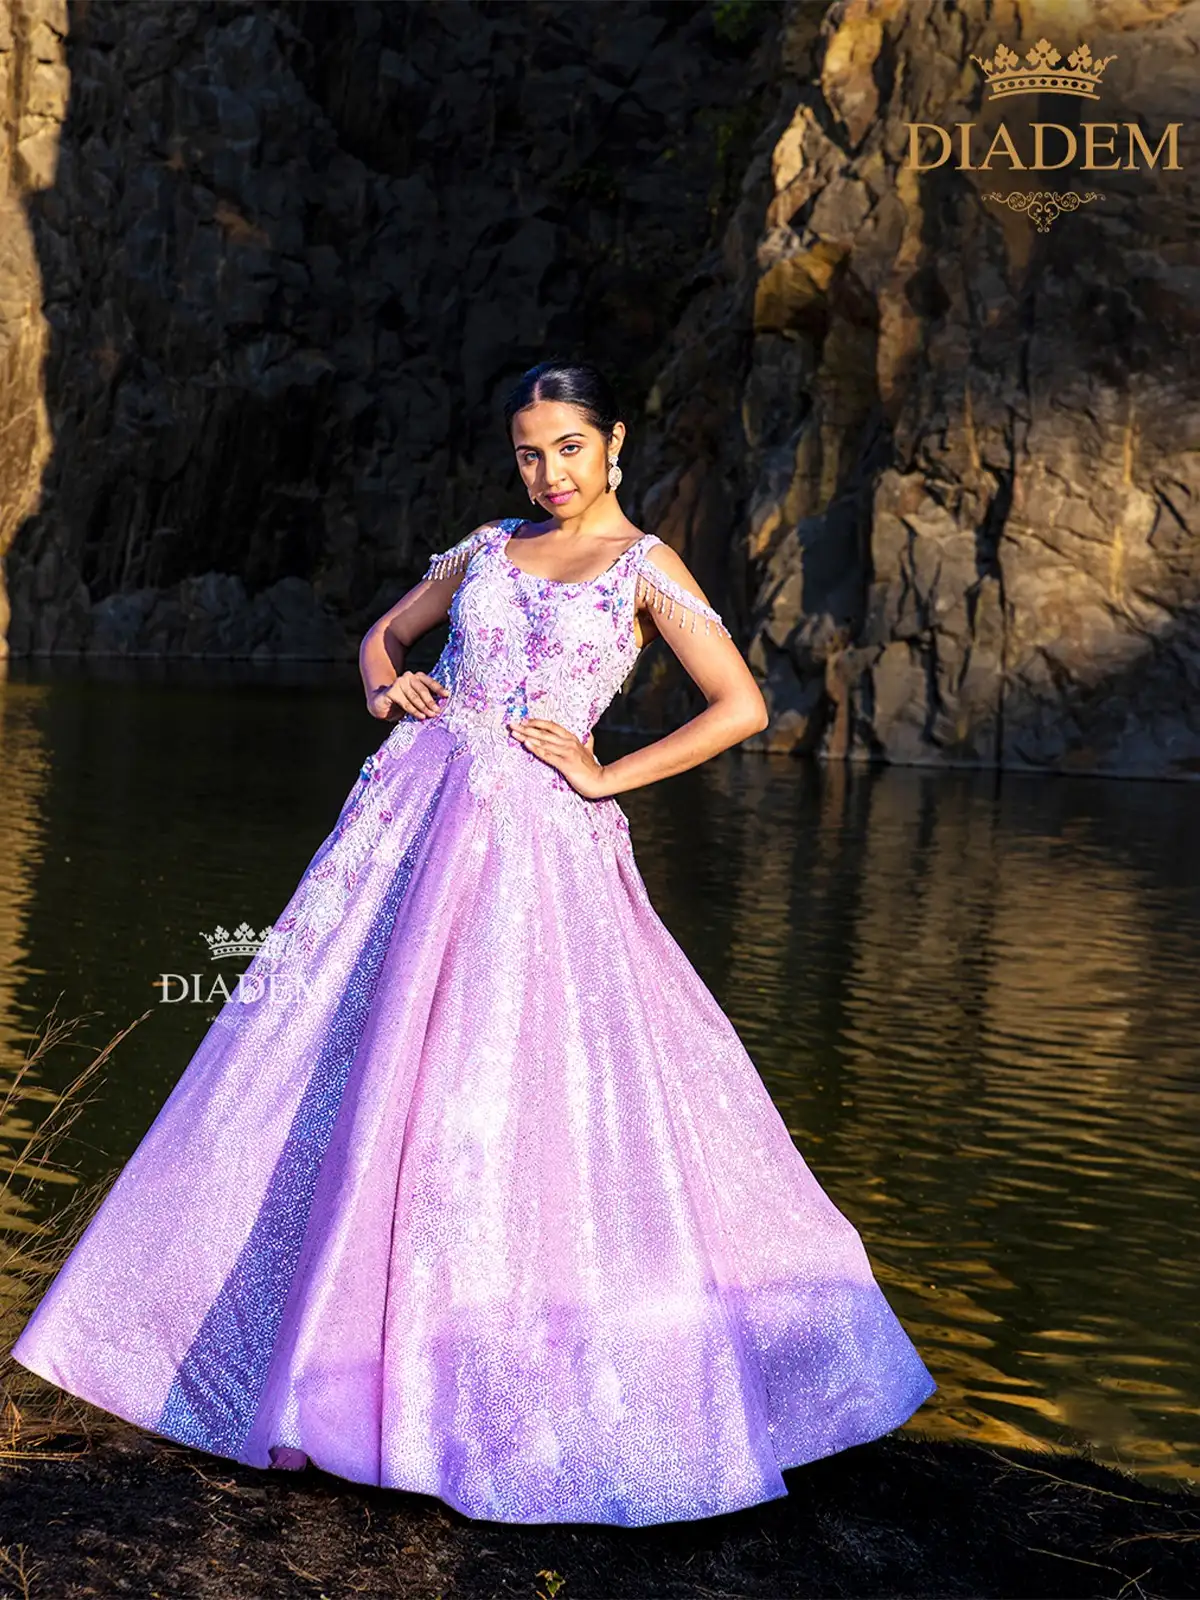 32 Gorgeous Purple Bridesmaid Dresses | TheKnot